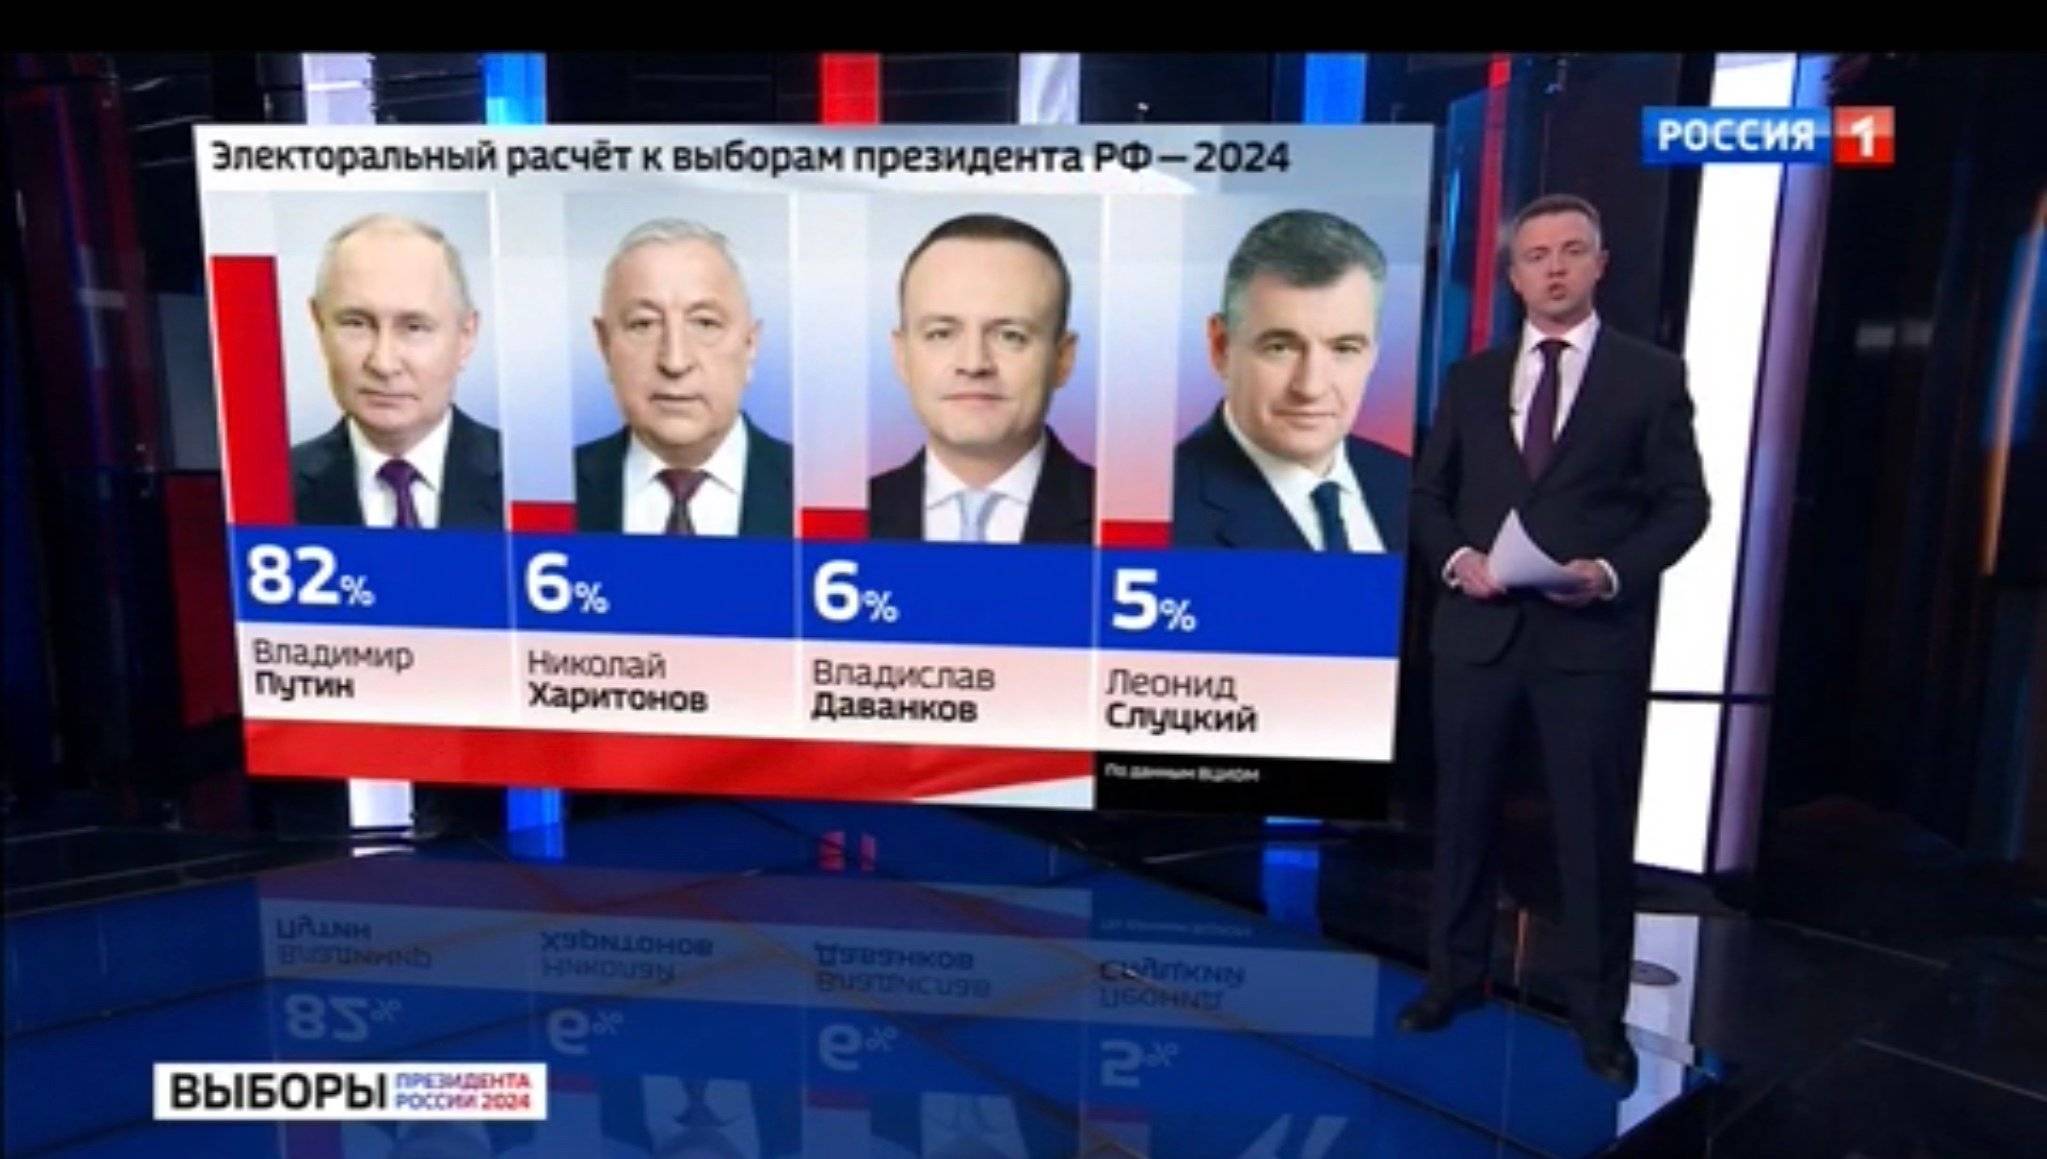 Prezenter pokazuje spodziewane wyniki wyborów, Putin dostanie 82 proc., pozostali kandydaci po 4-6 proc. głosów